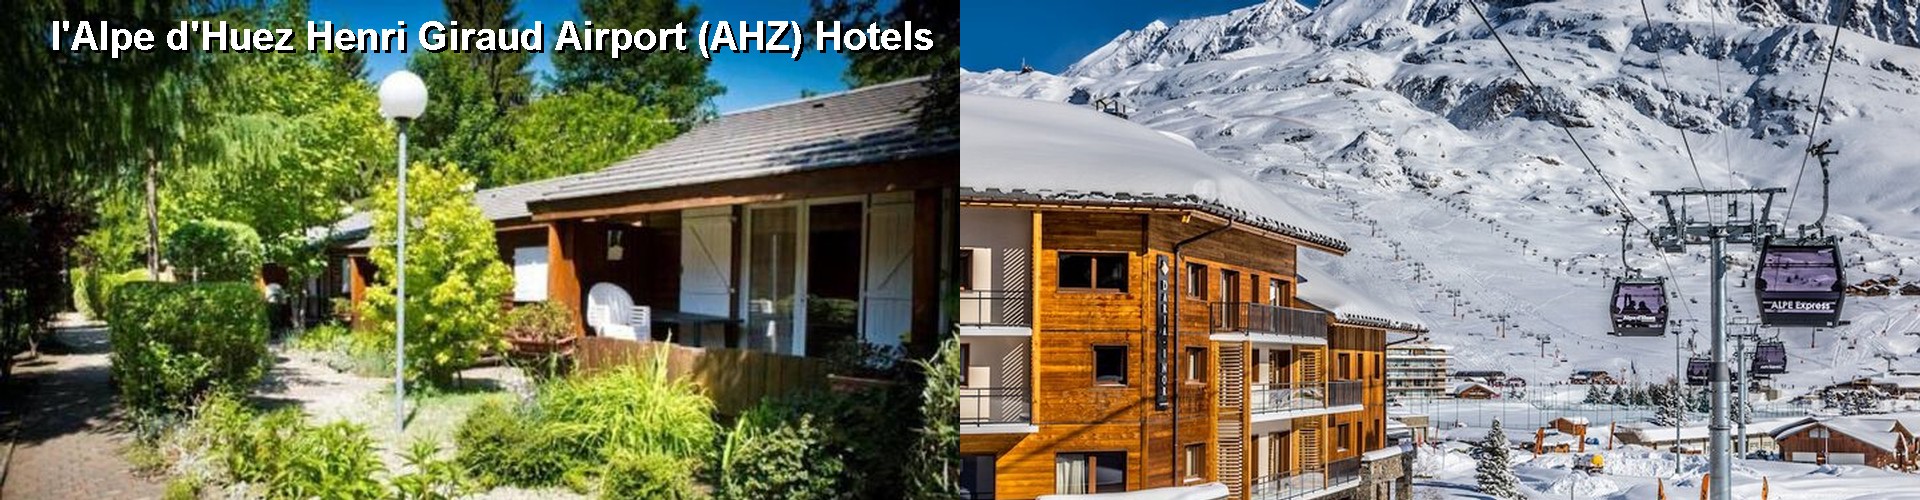 5 Best Hotels near l'Alpe d'Huez Henri Giraud Airport (AHZ)